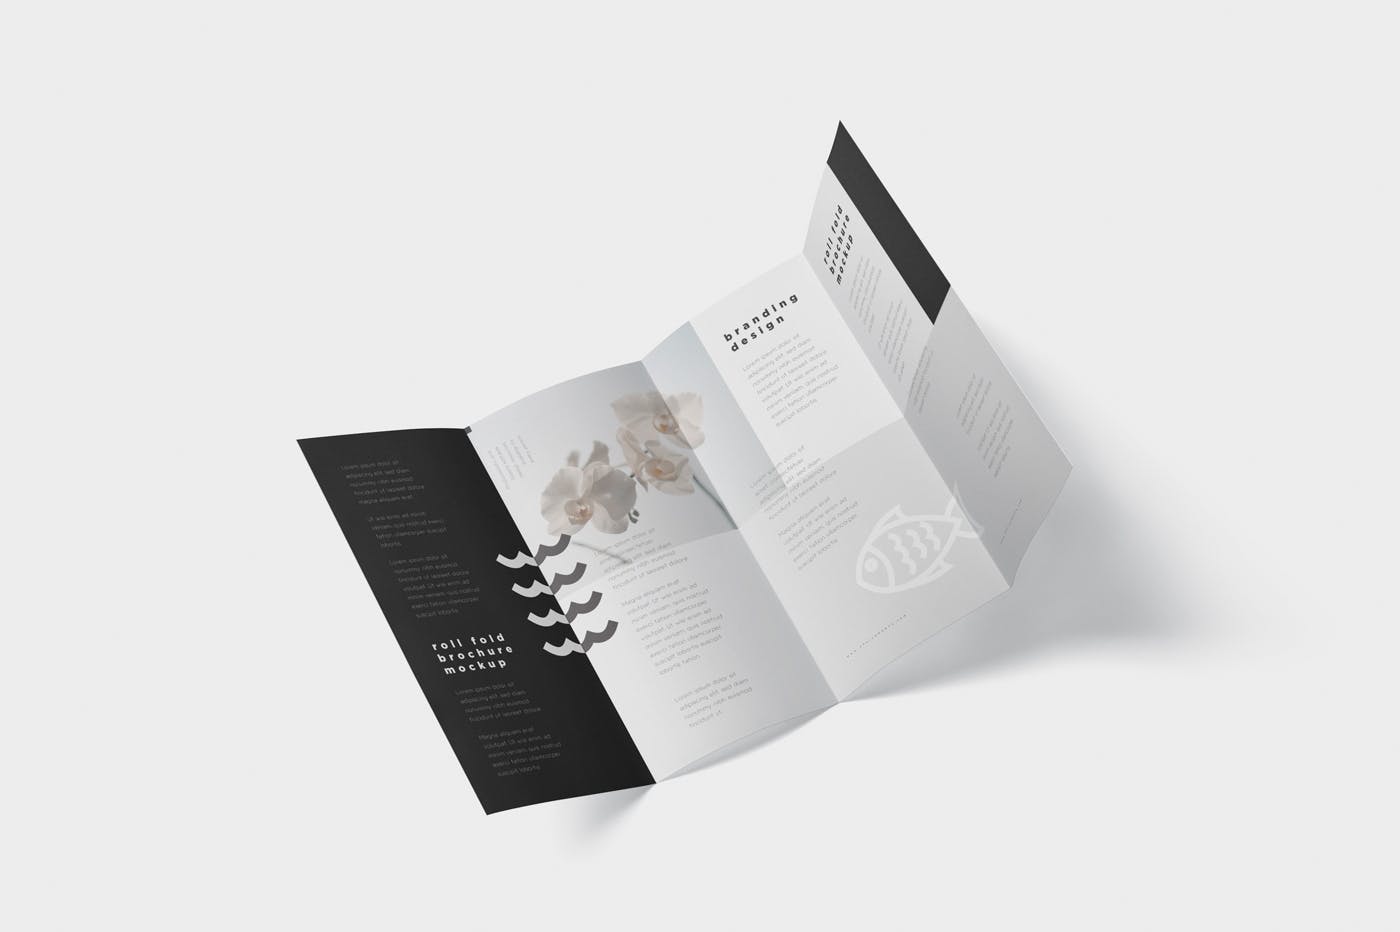 折叠设计风格企业传单/宣传册设计样机第一素材精选 Roll-Fold Brochure Mockup – DL DIN Lang Size插图(5)